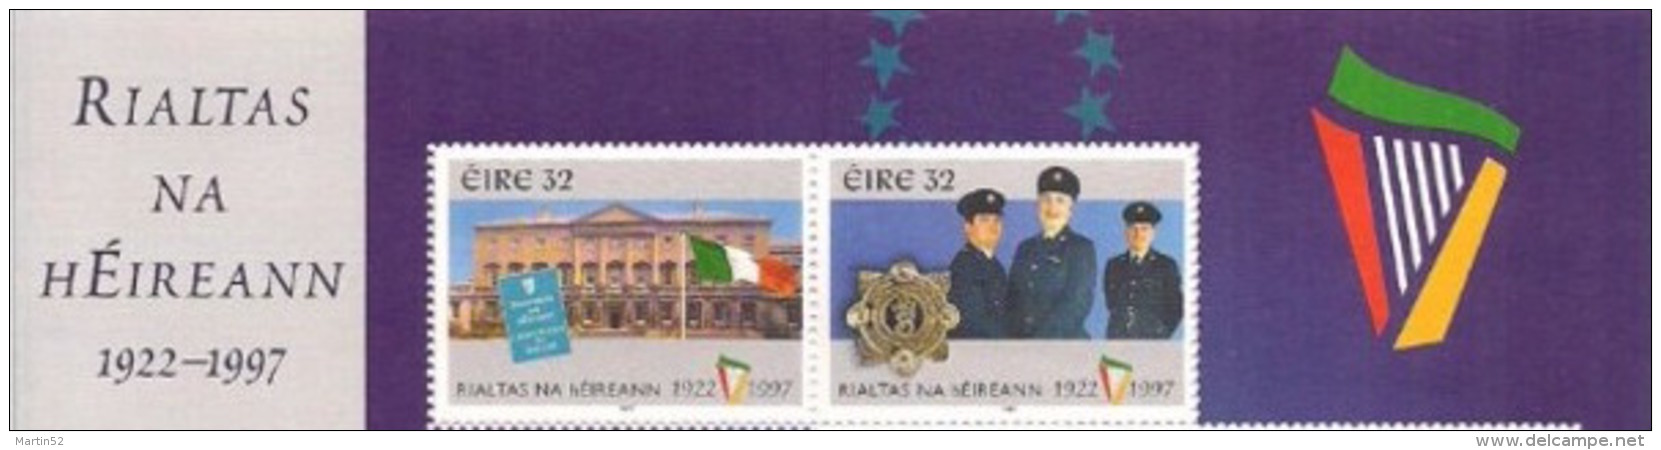 Ireland / Eire 1997: Paar Aus Gross-Bogen - 1 Marke Mit Wertstufe Denomination "32" (anstatt Instead "52") NUR Aus Bogen - Politie En Rijkswacht